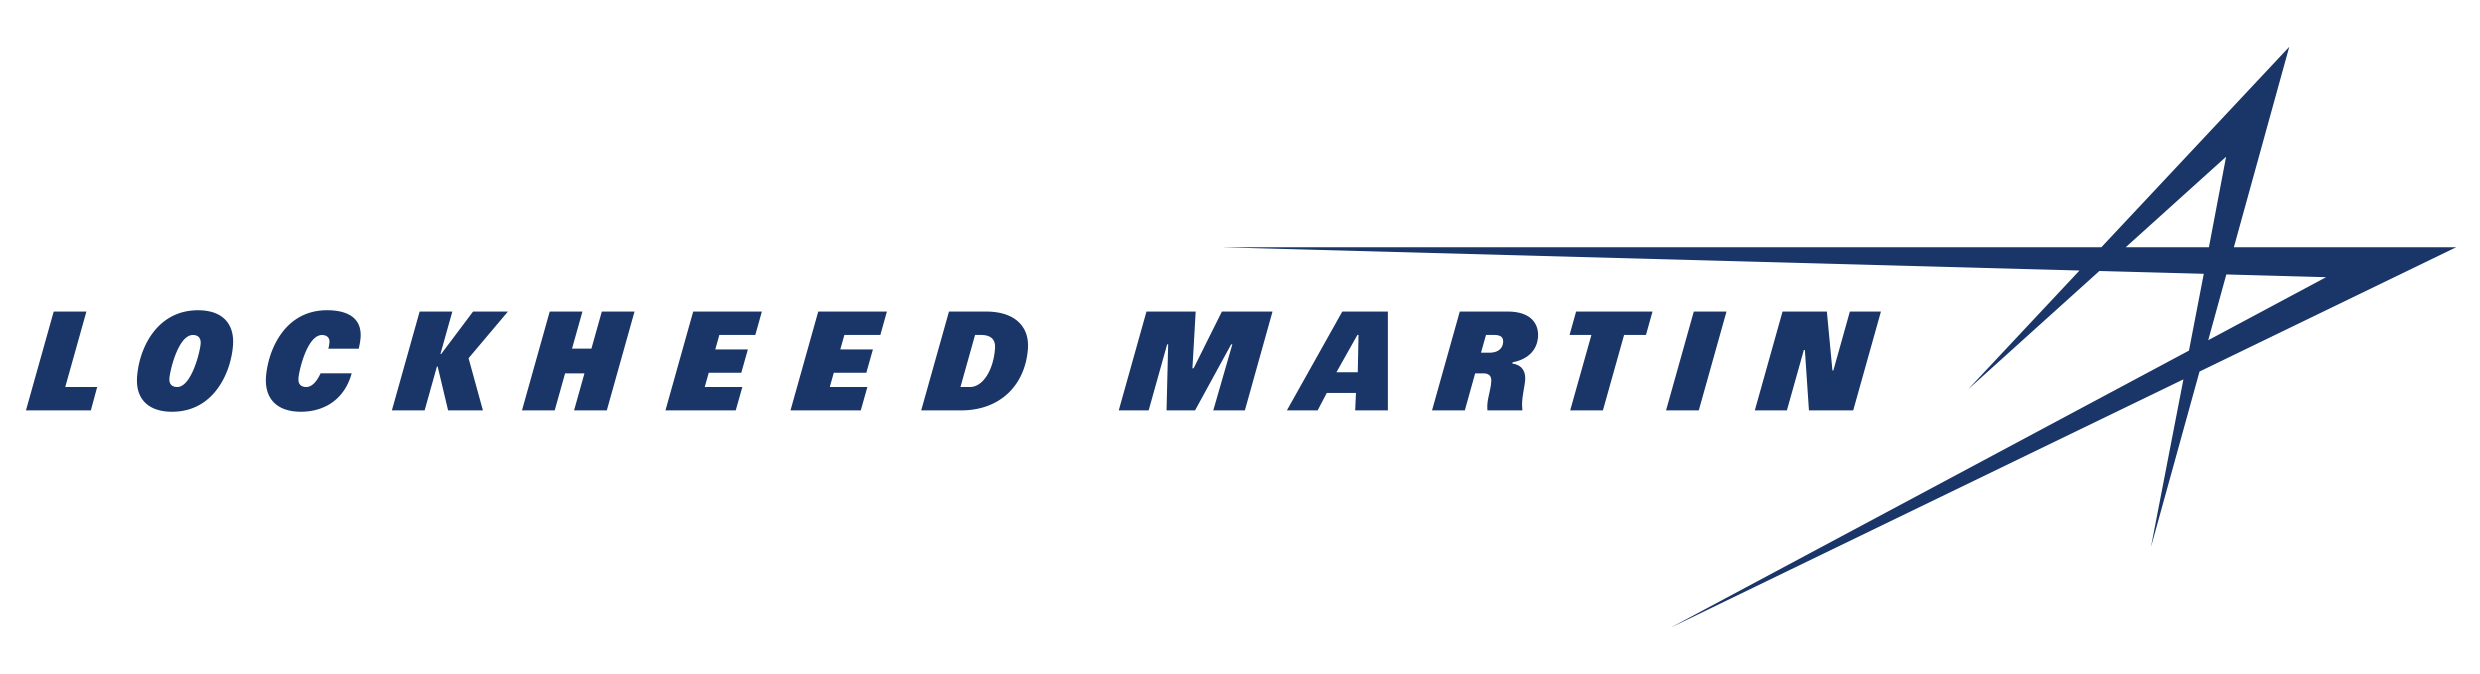 Lockheed Martin Corporation | Lockheed Martin